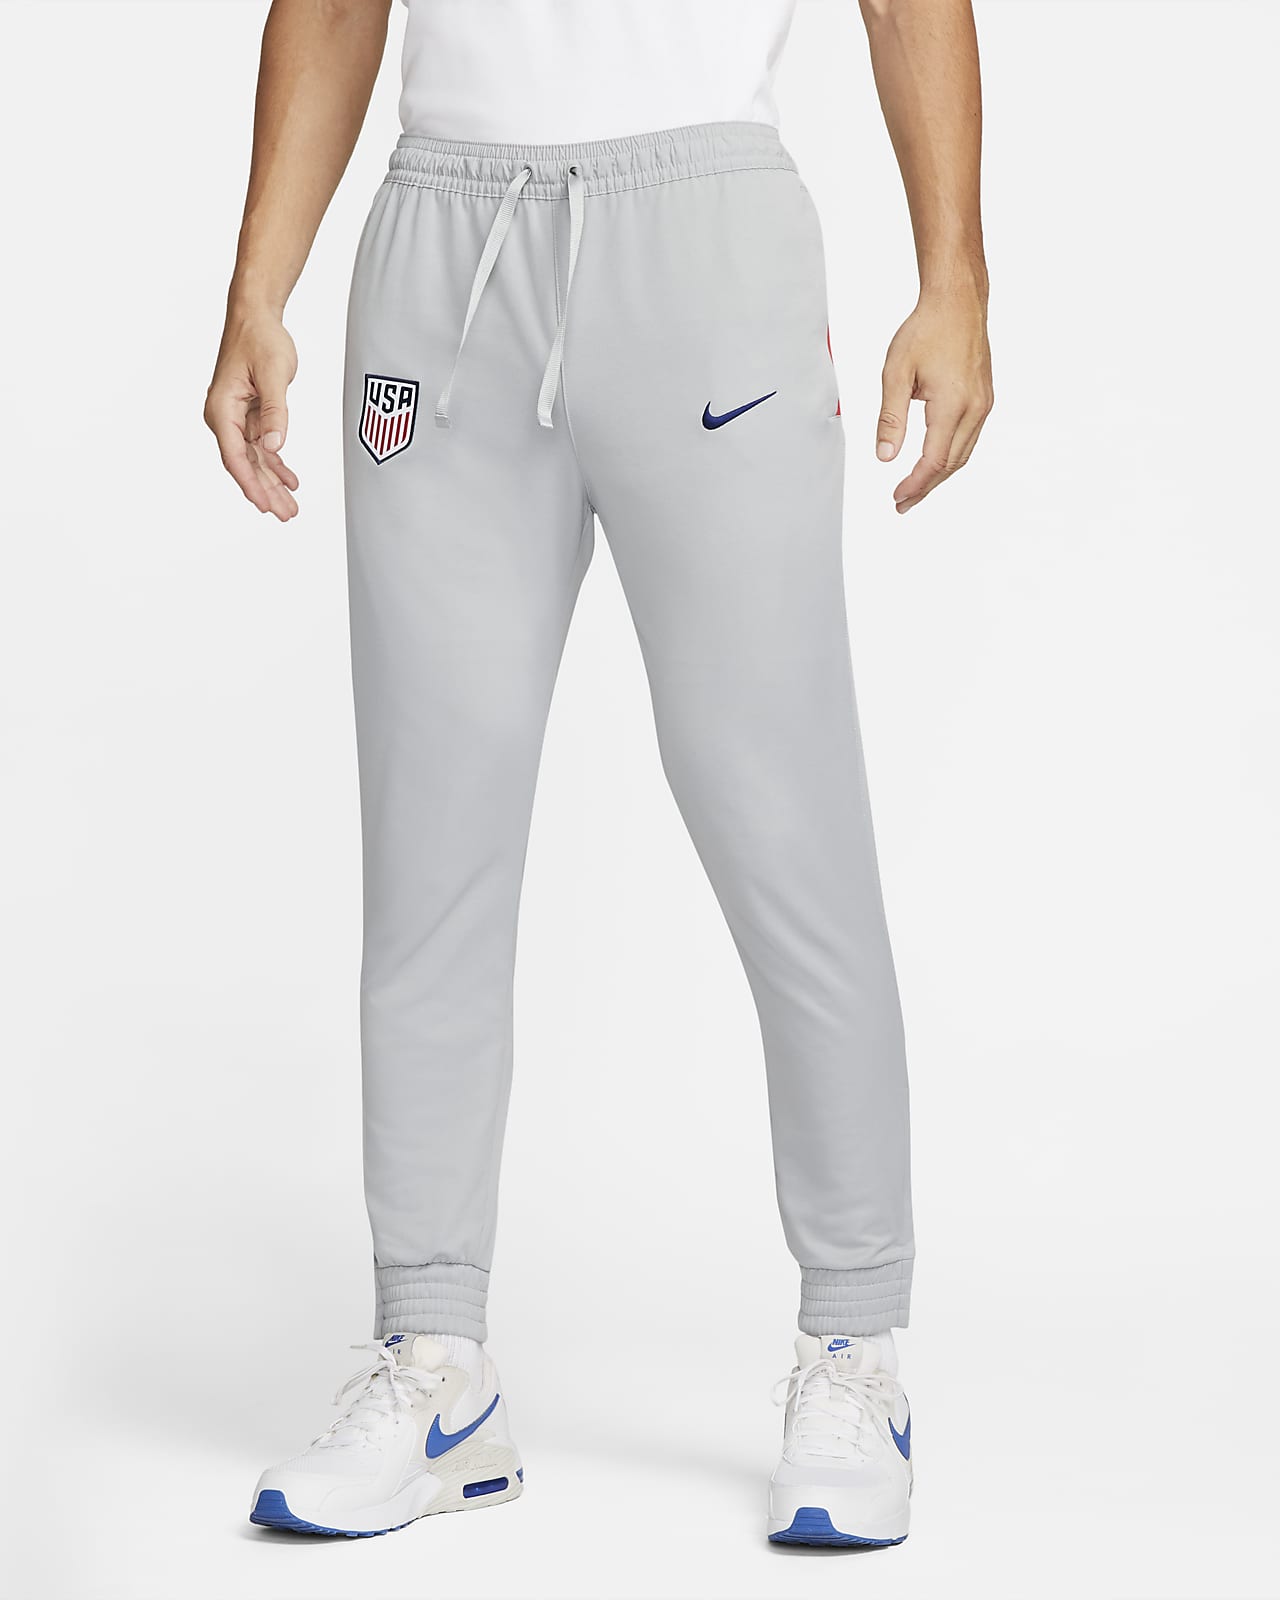 Pantalones de fútbol de Knit hombre Estados Unidos. Nike.com